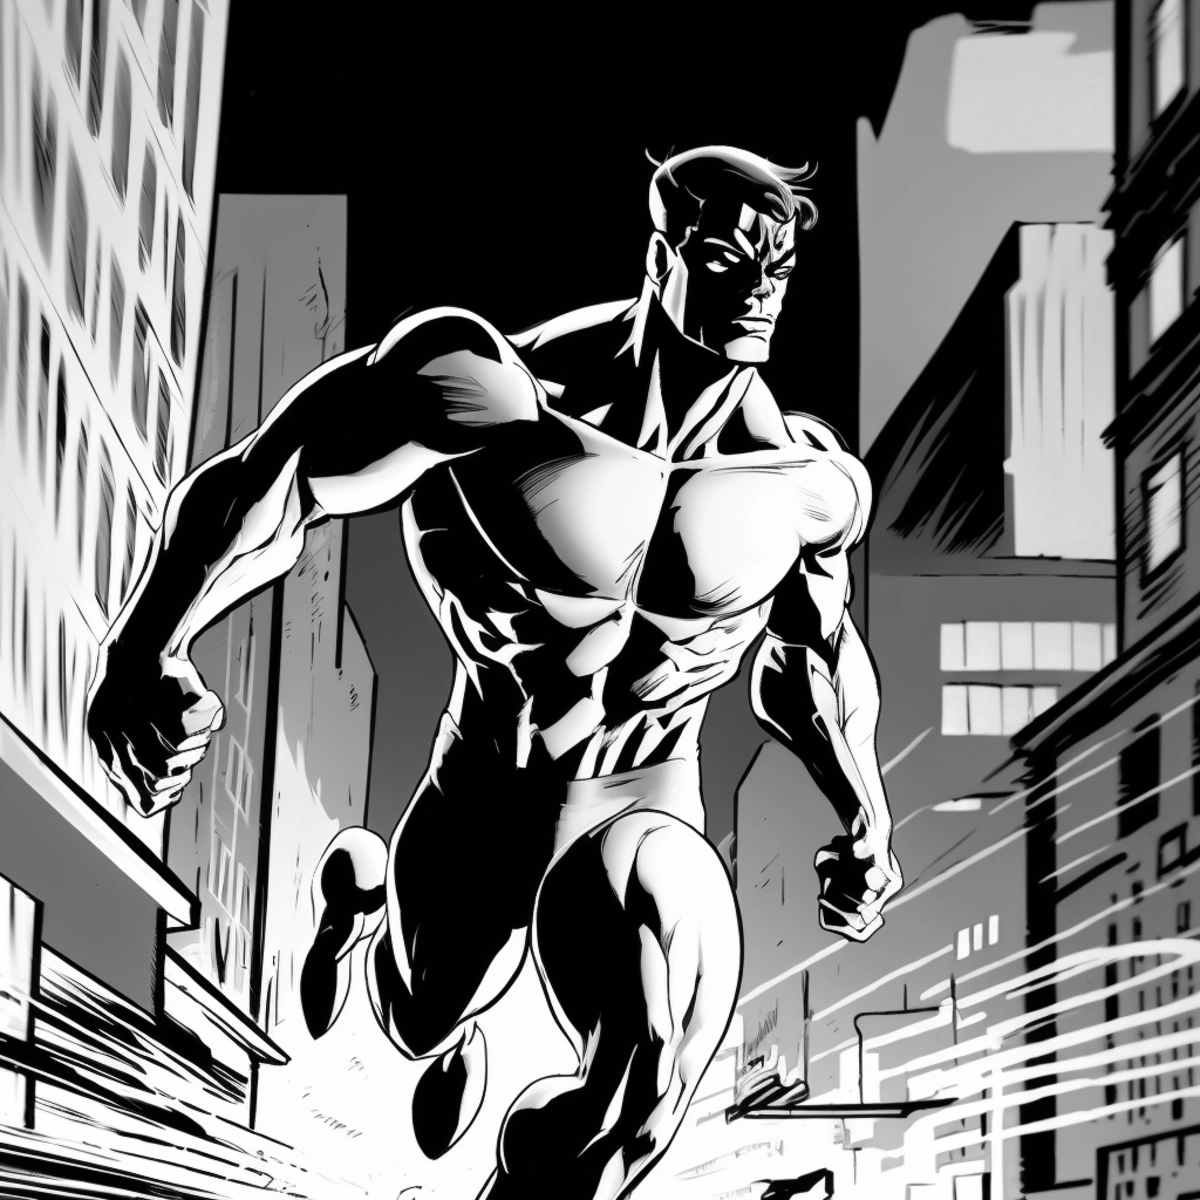 Eine dynamische Illustration im Comic-Stil eines Superhelden, der in Aktion tritt, mit einer Stadtlandschaft im Hintergrund